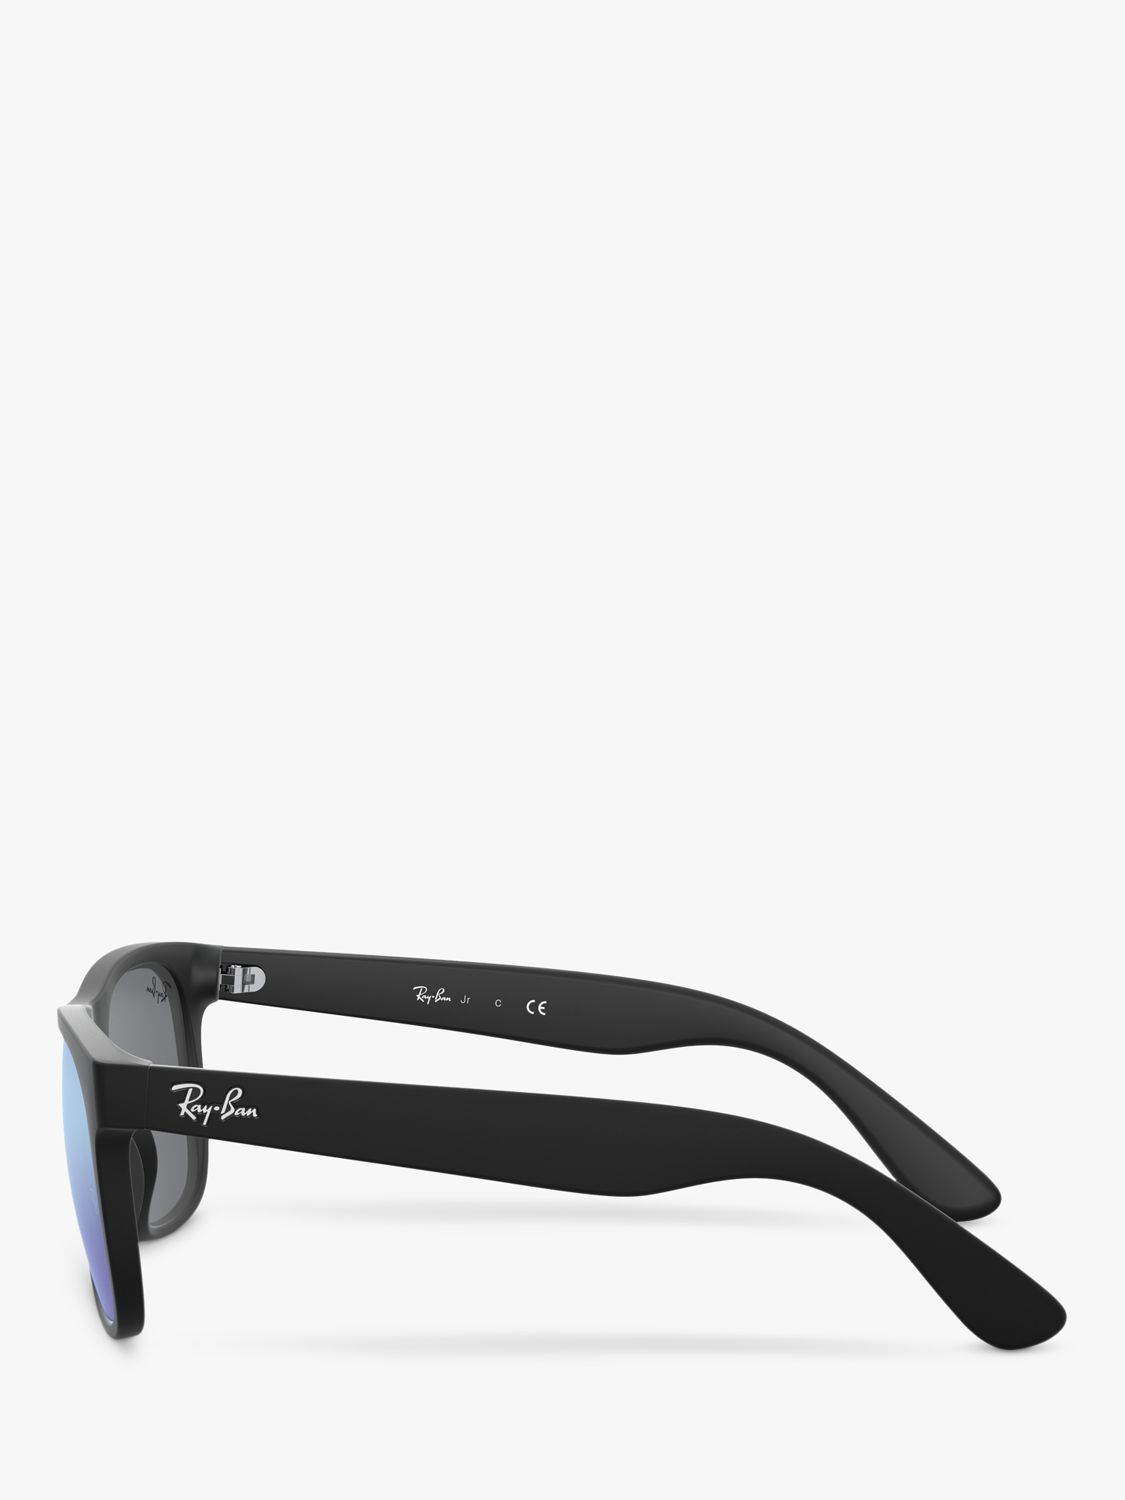 Ray-Ban Junior RJ9069S Square Frame Sunglasses, Black/Blue